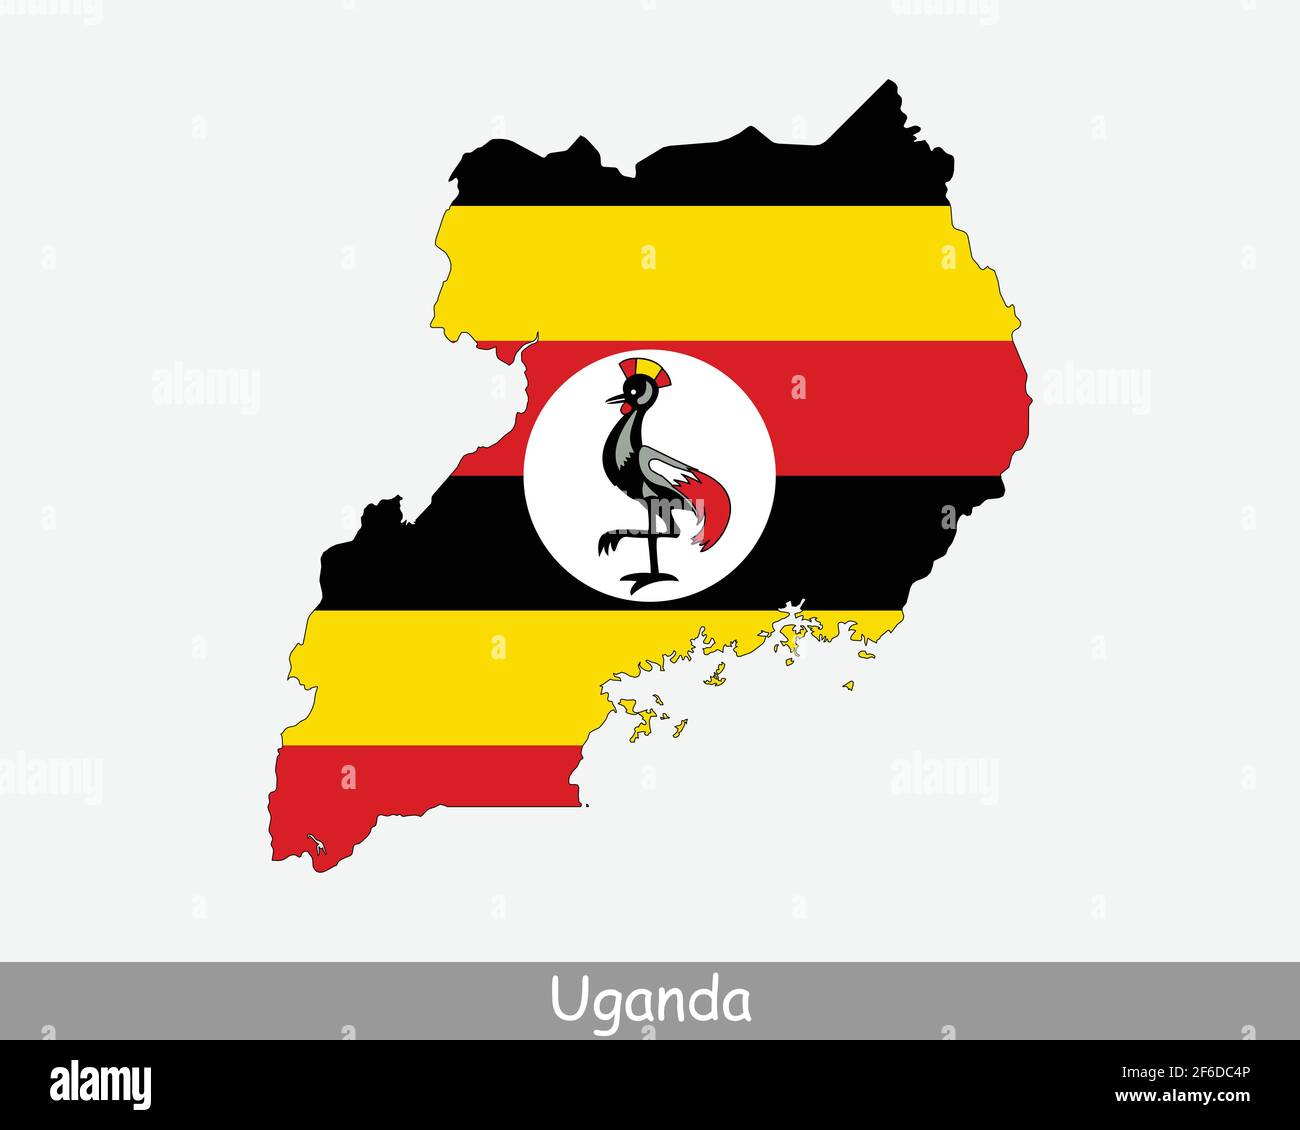 Mappa della bandiera ugandese. Mappa della Repubblica di Uganda con la bandiera nazionale ugandese isolata su sfondo bianco. Illustrazione vettoriale. Illustrazione Vettoriale